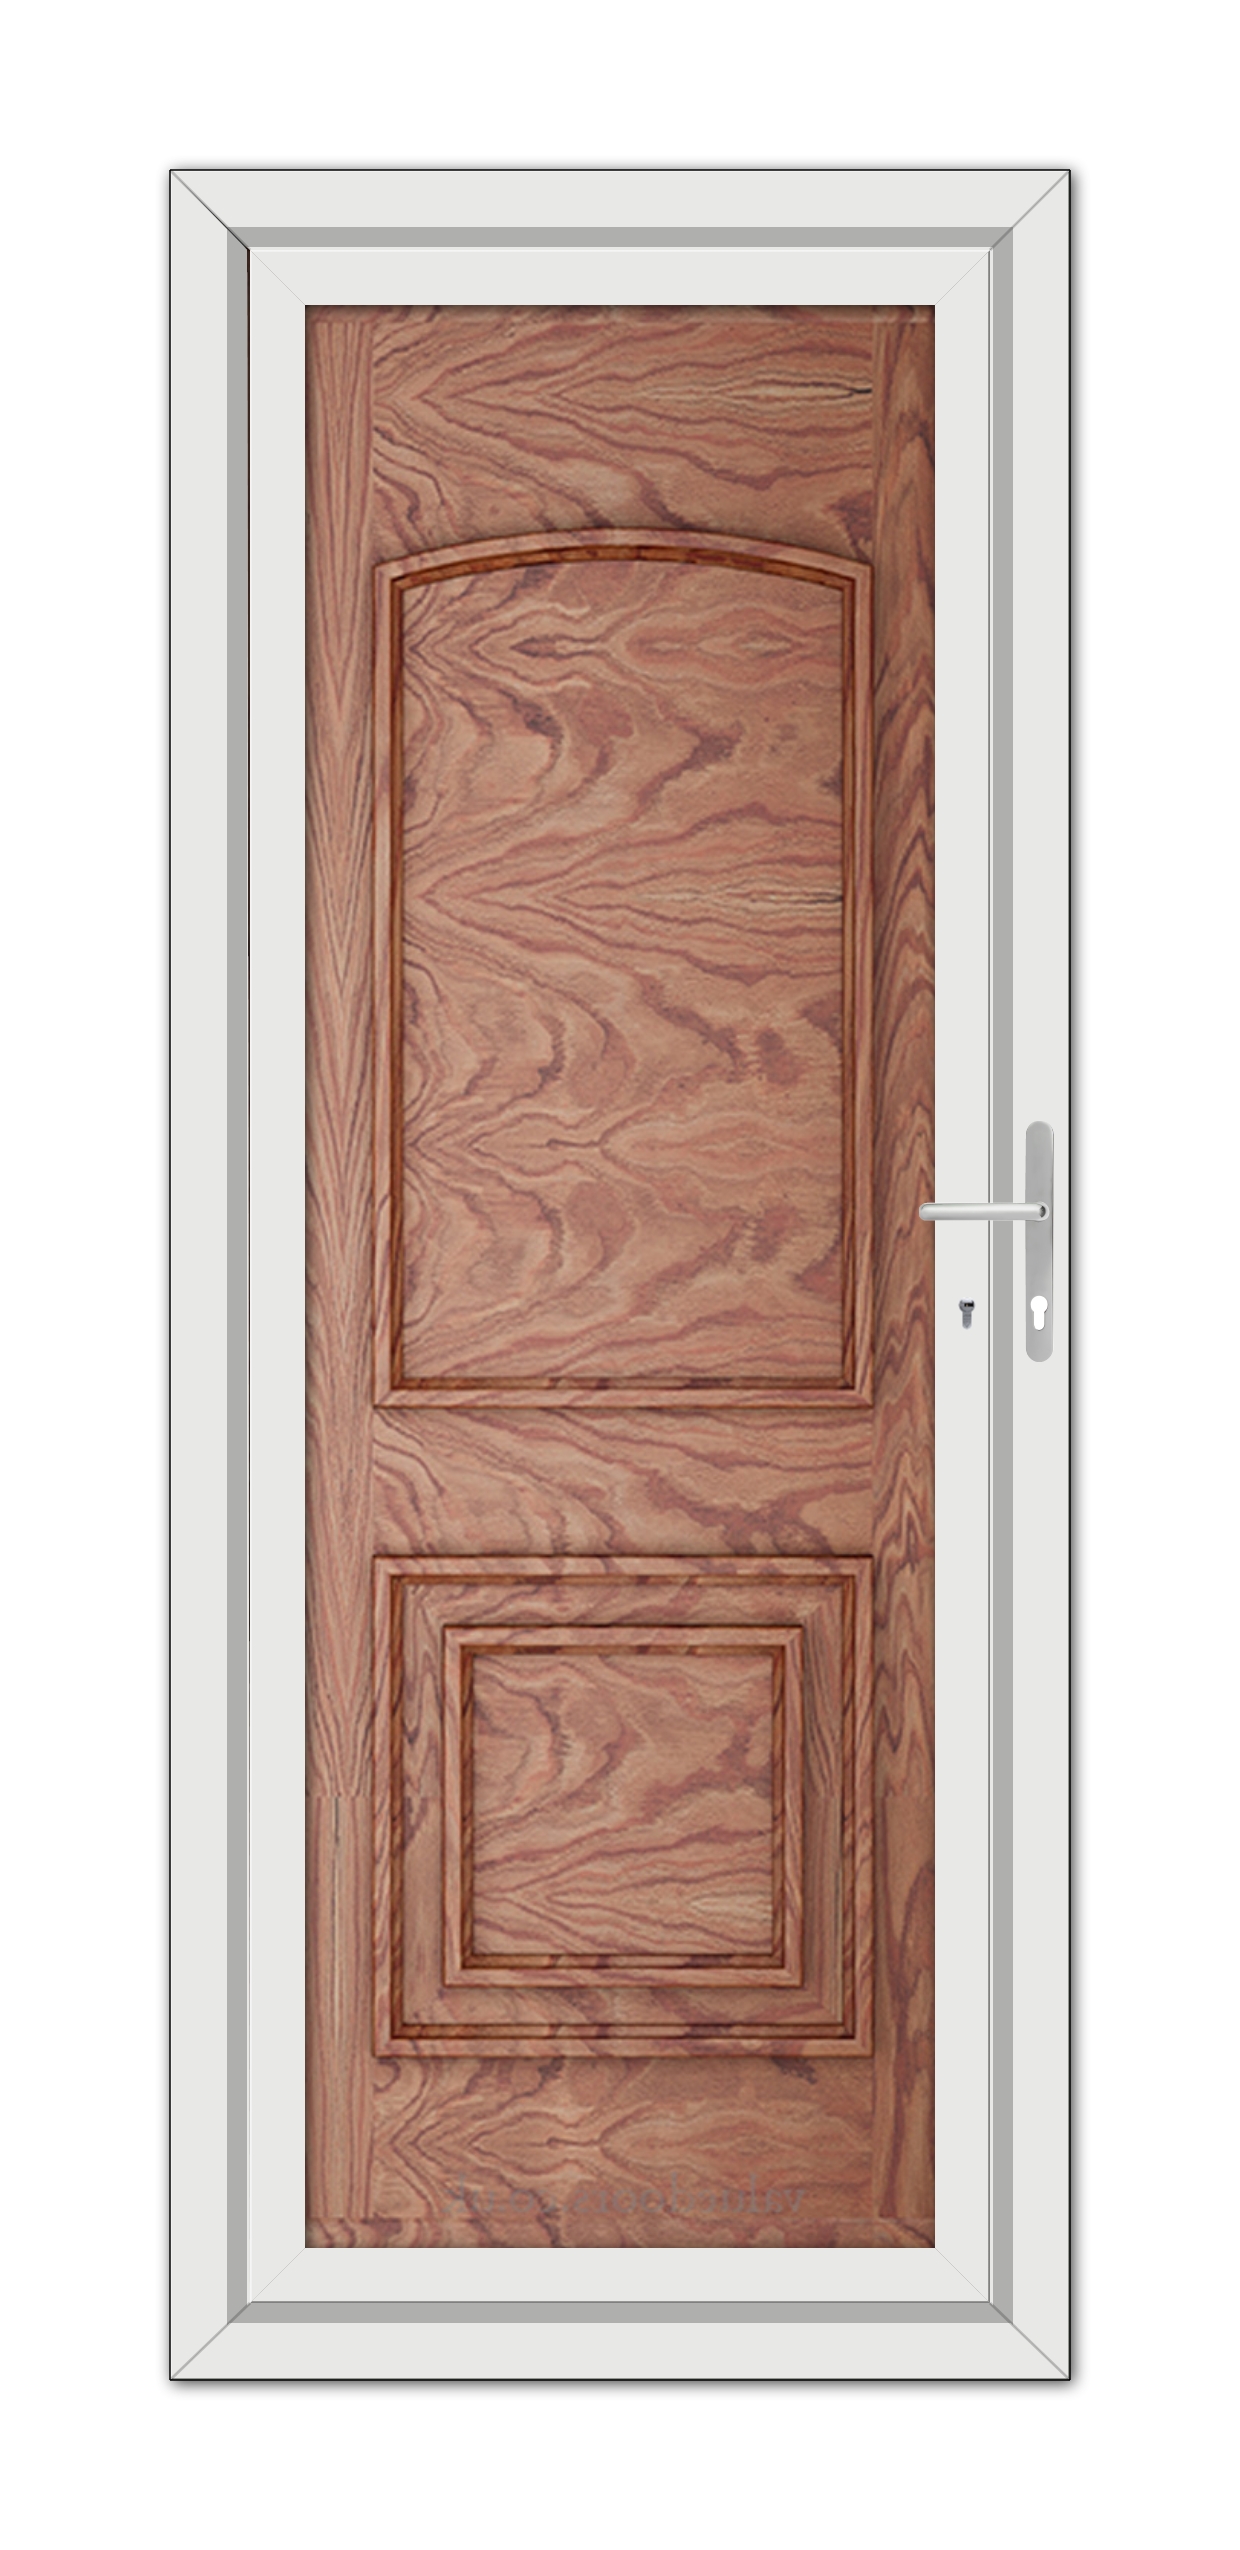 A close-up of a Solid Oak Balmoral Classic Solid uPVC Door.